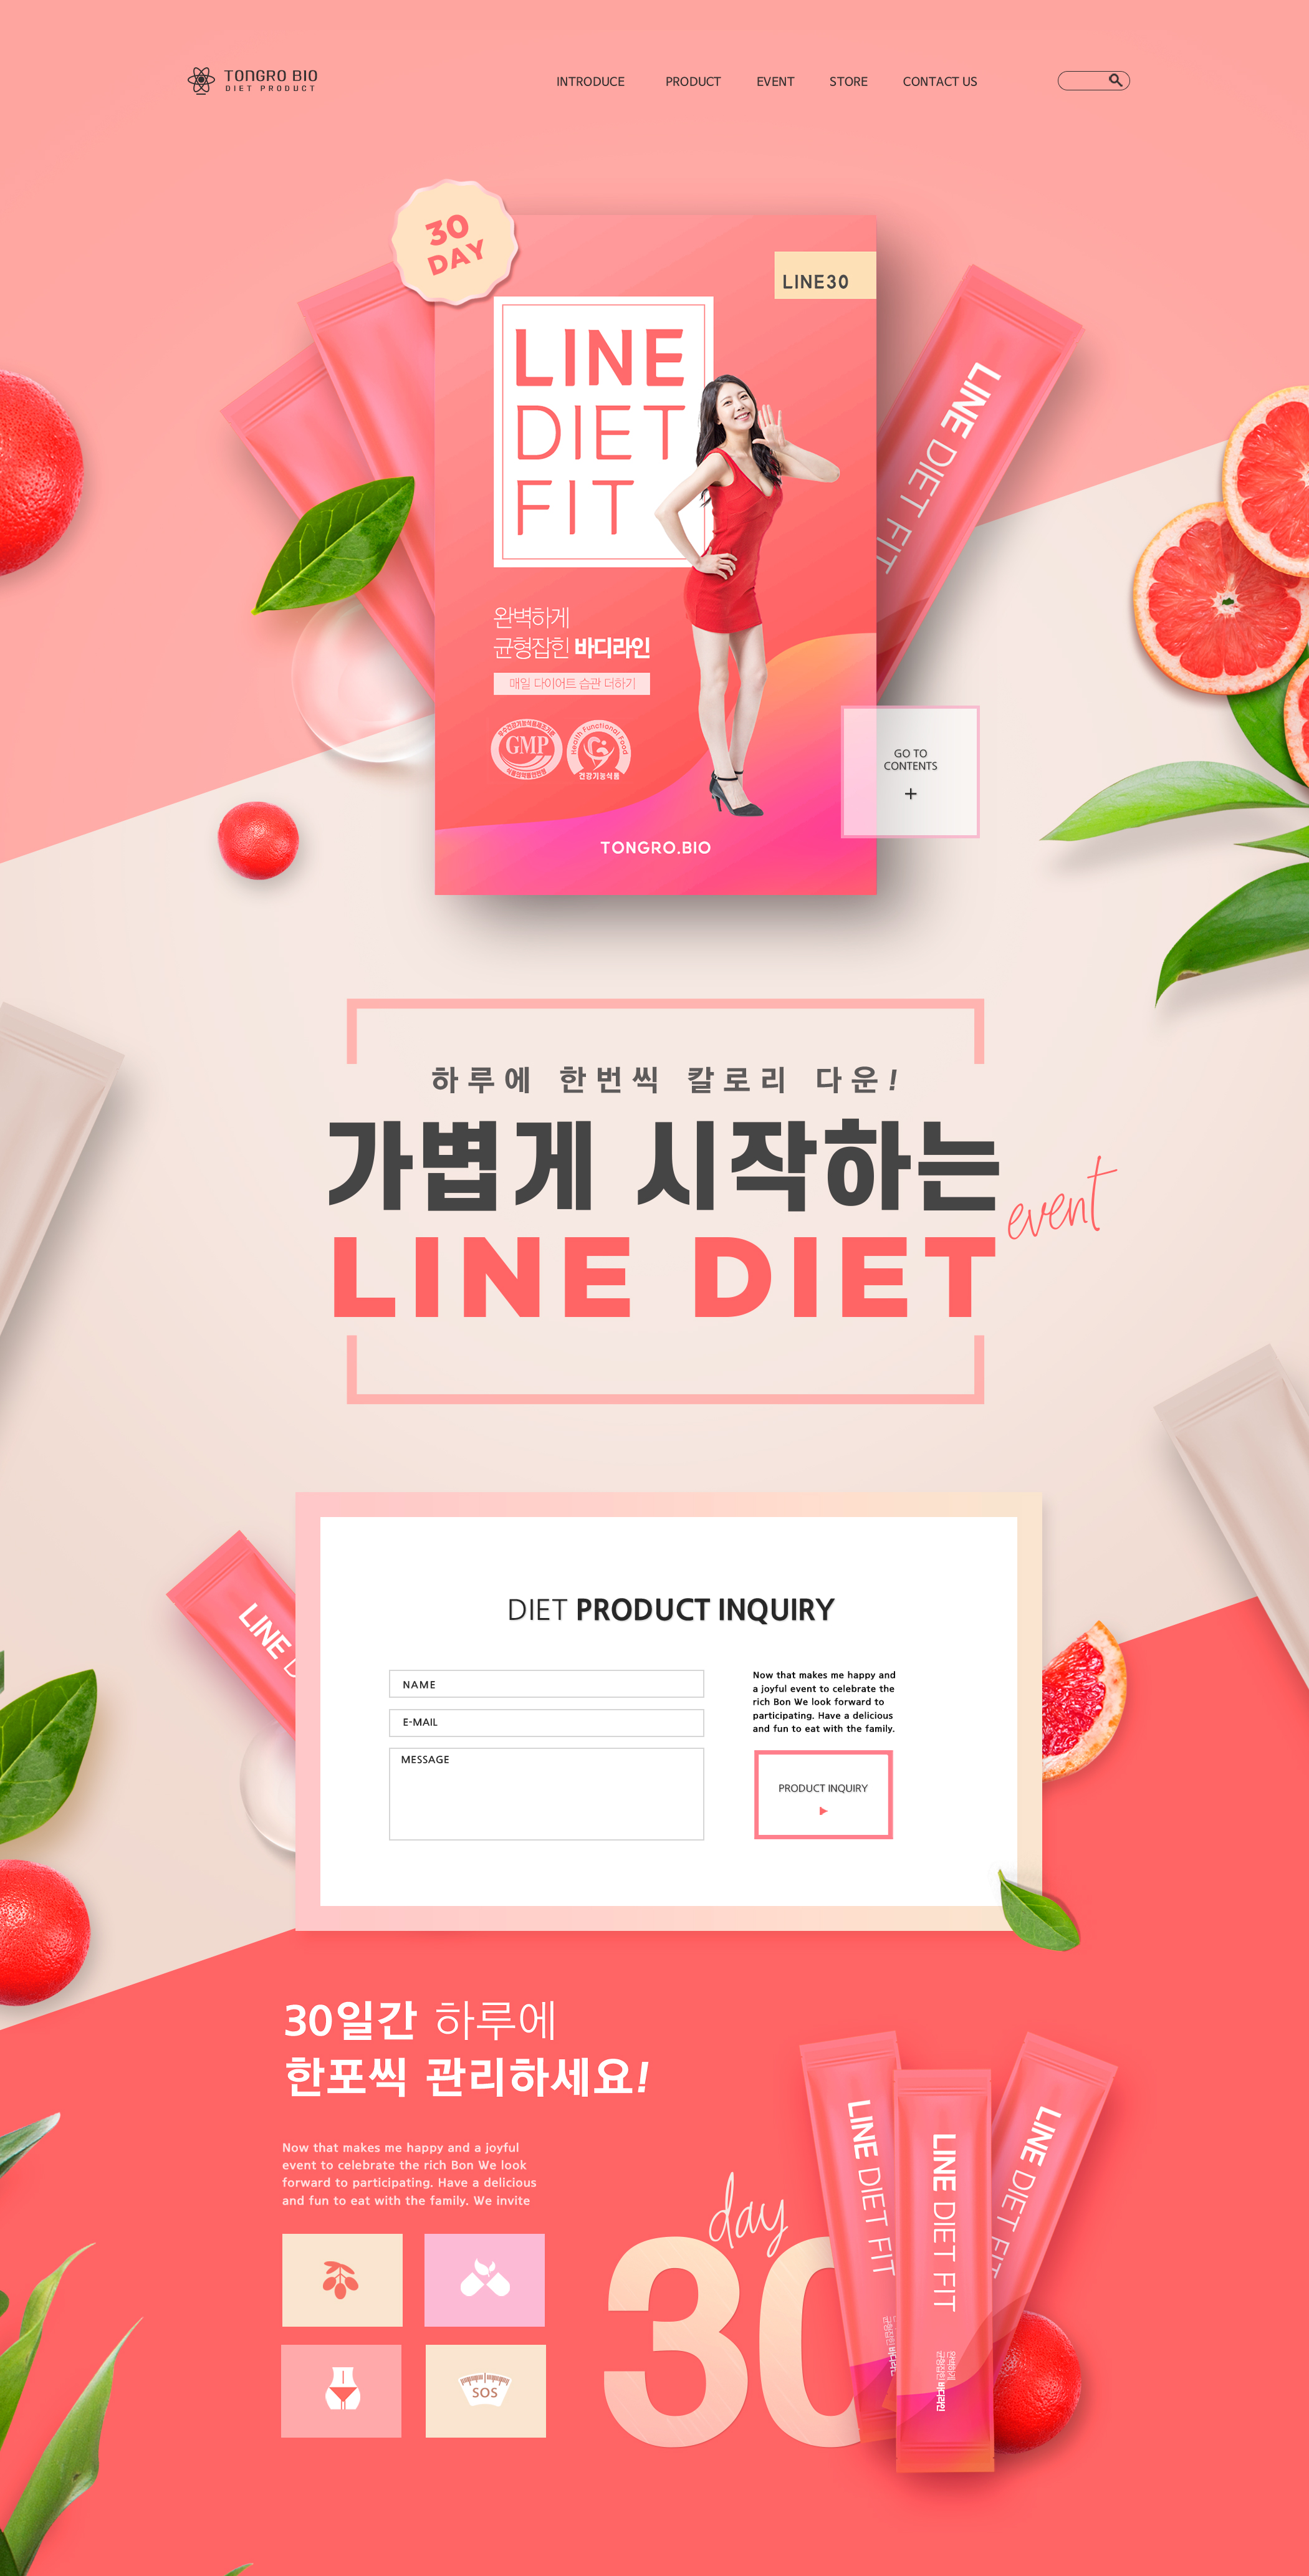 韩式减肥餐包饮食促销网页设计模板